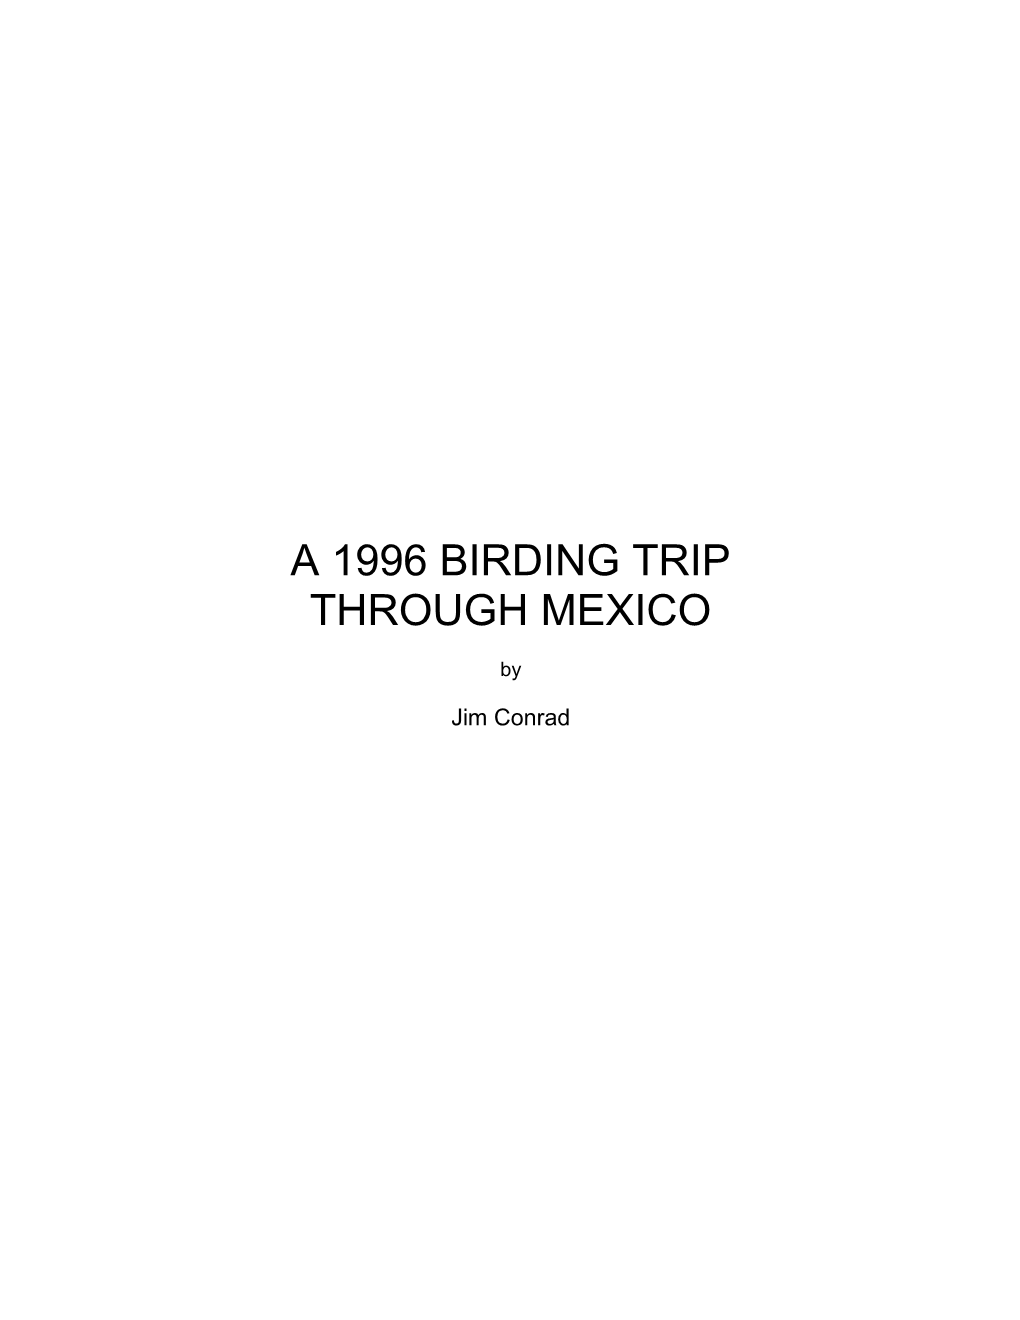 A 1996 Birding Trip Through Mexico